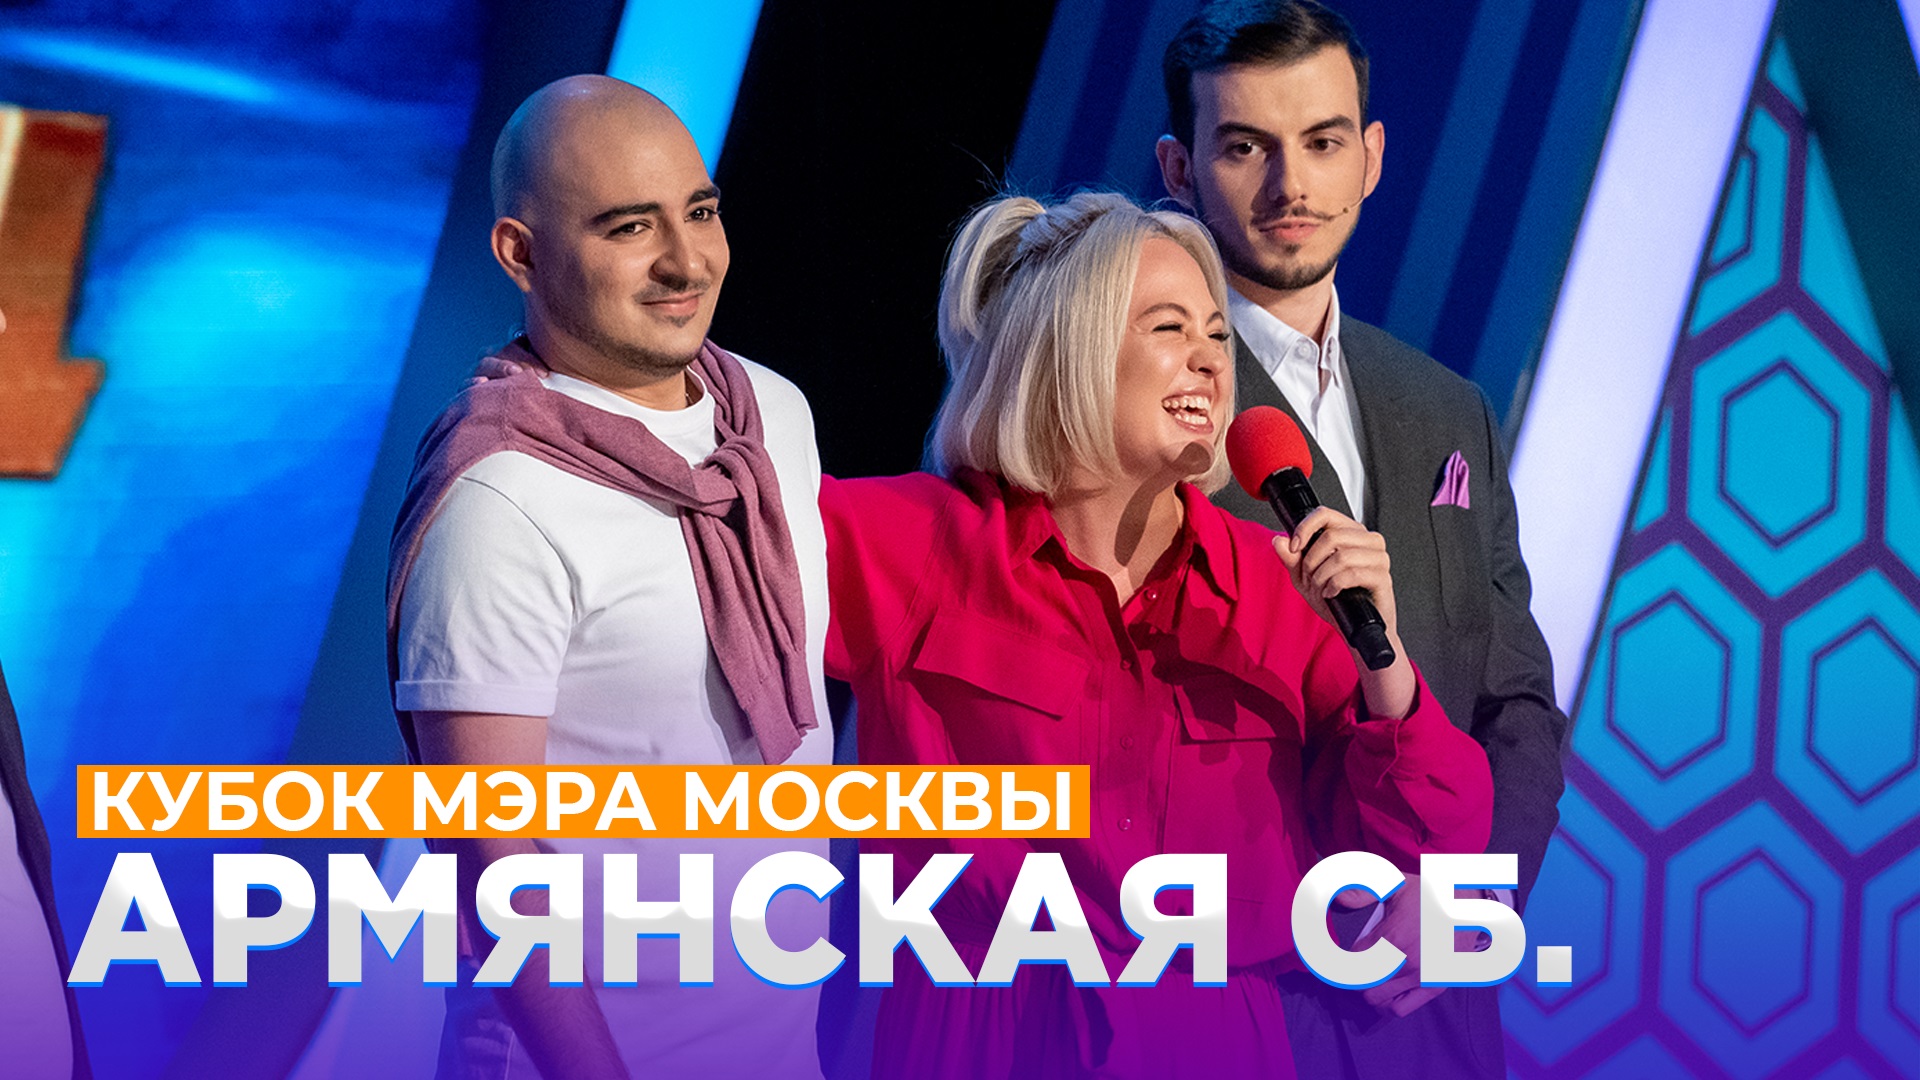 КВН 2021 Высшая лига - Армянская сборная Кубок мэра Москвы